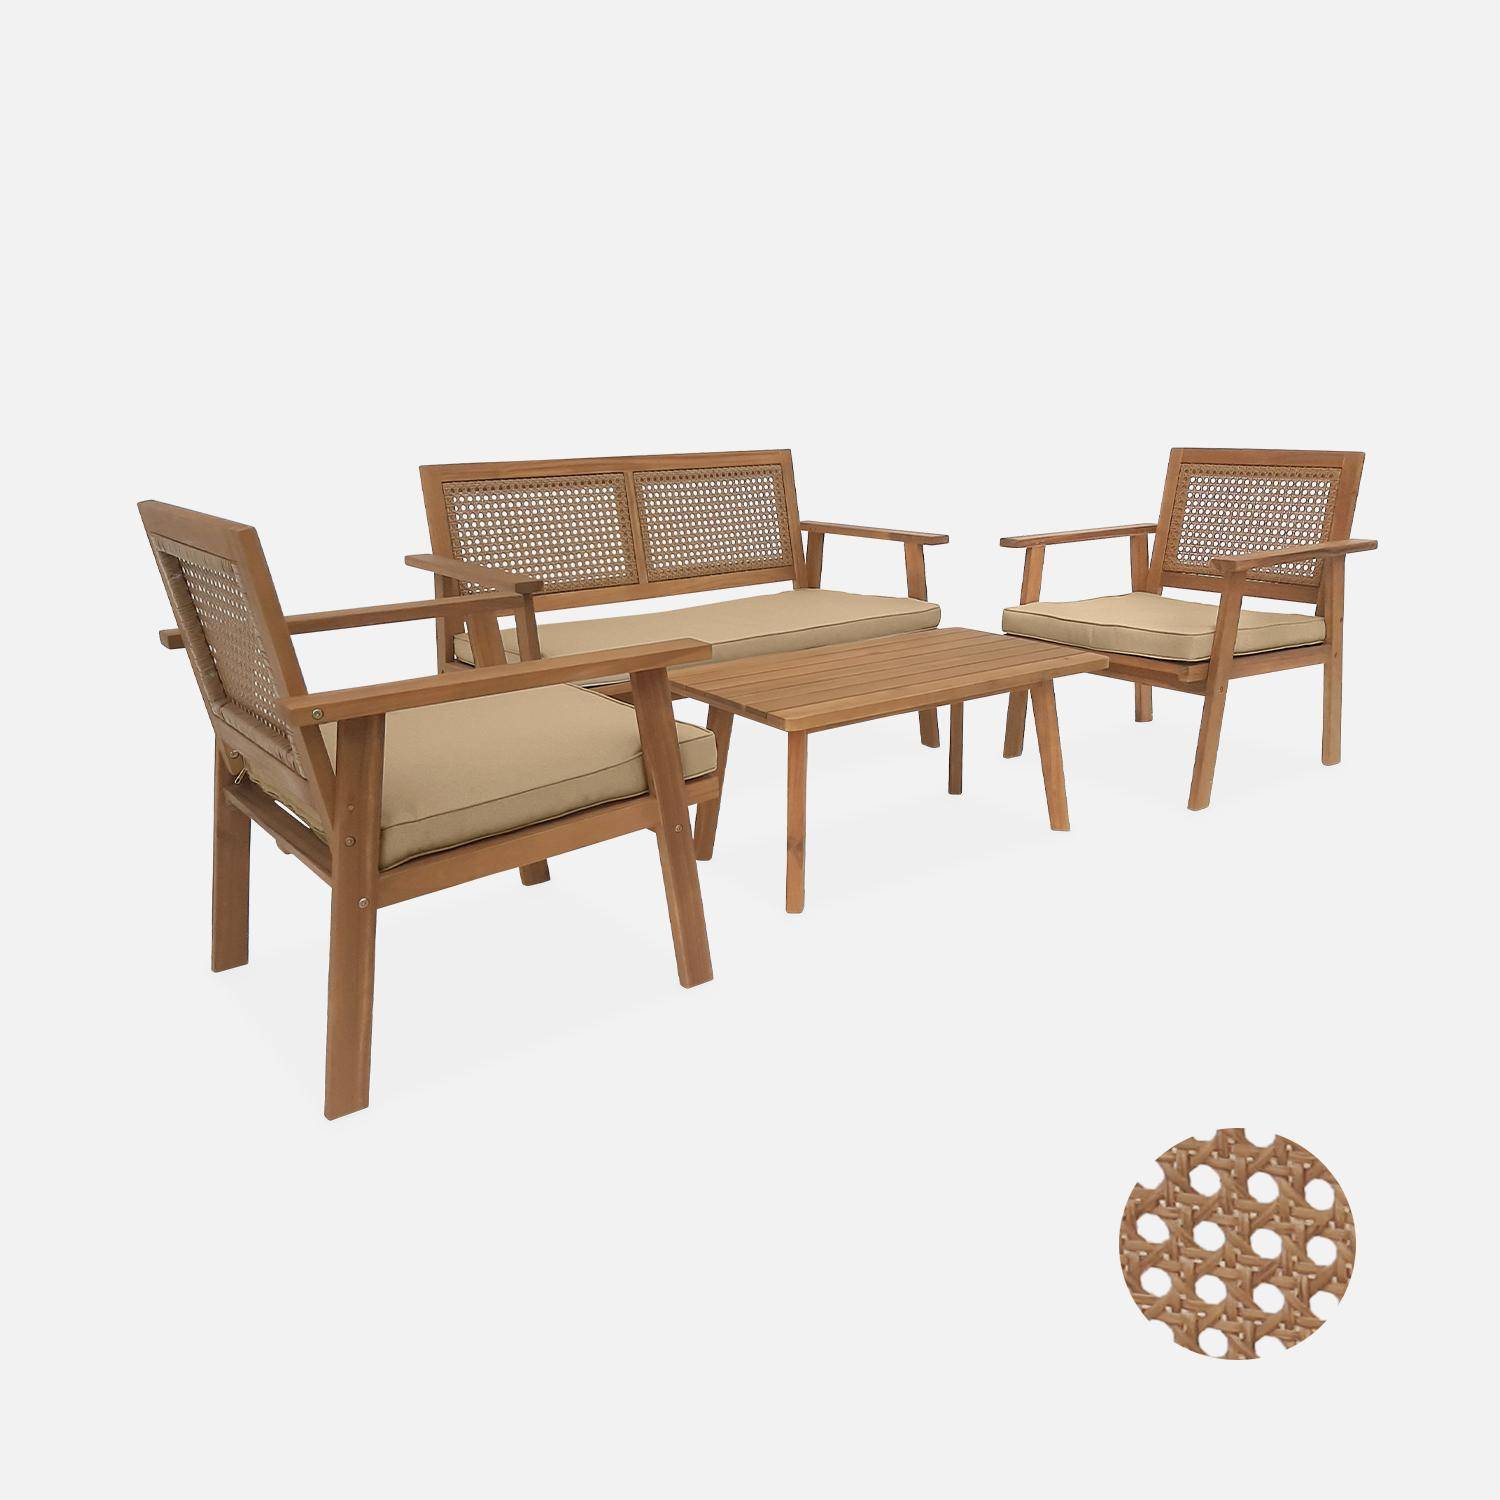 Gartengarnitur aus Holz und Rundrohrgeflecht 2-Sitzer-Sofa, 2 Sessel, 1 Couchtisch - Bohémia 117 x 64 x 74 cm Photo3